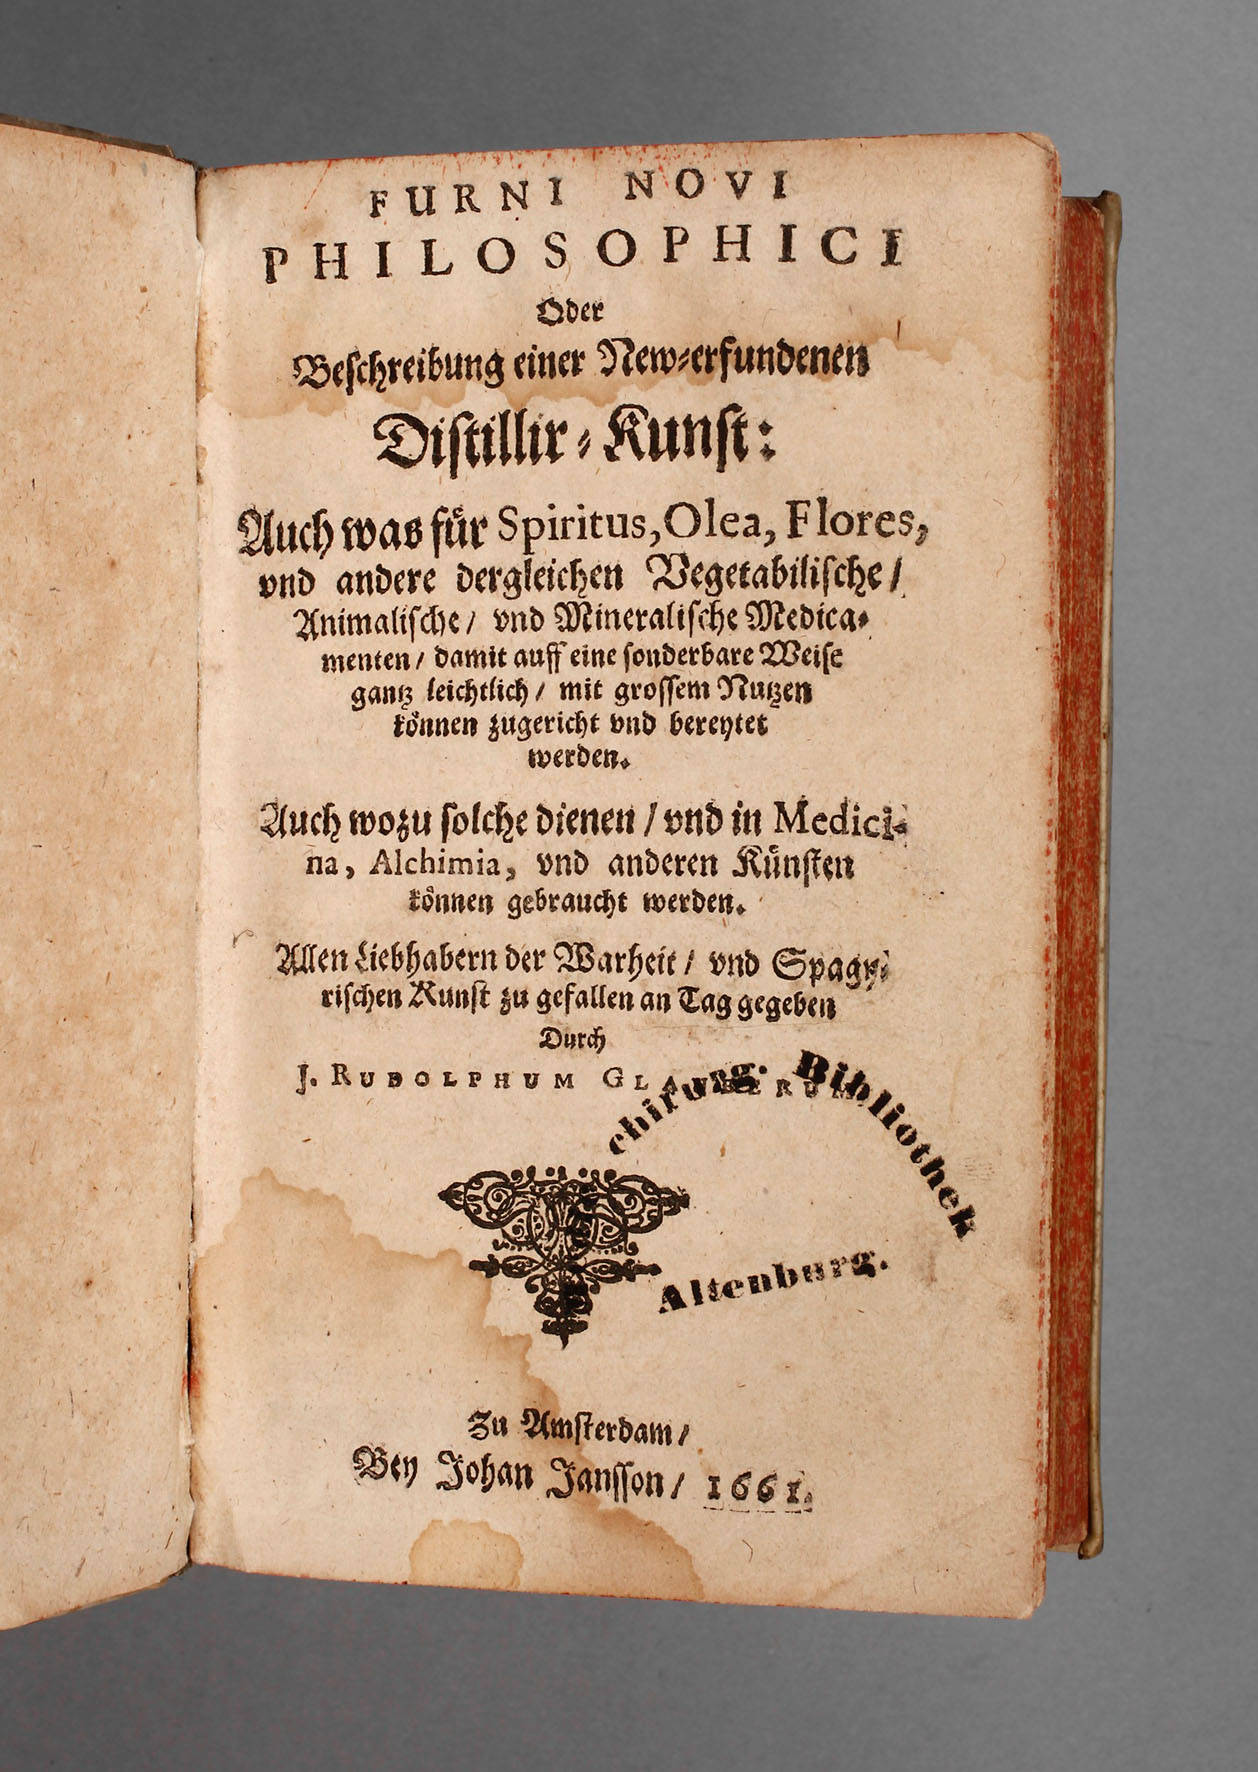 Glaubers Furni novi philosophici 1661